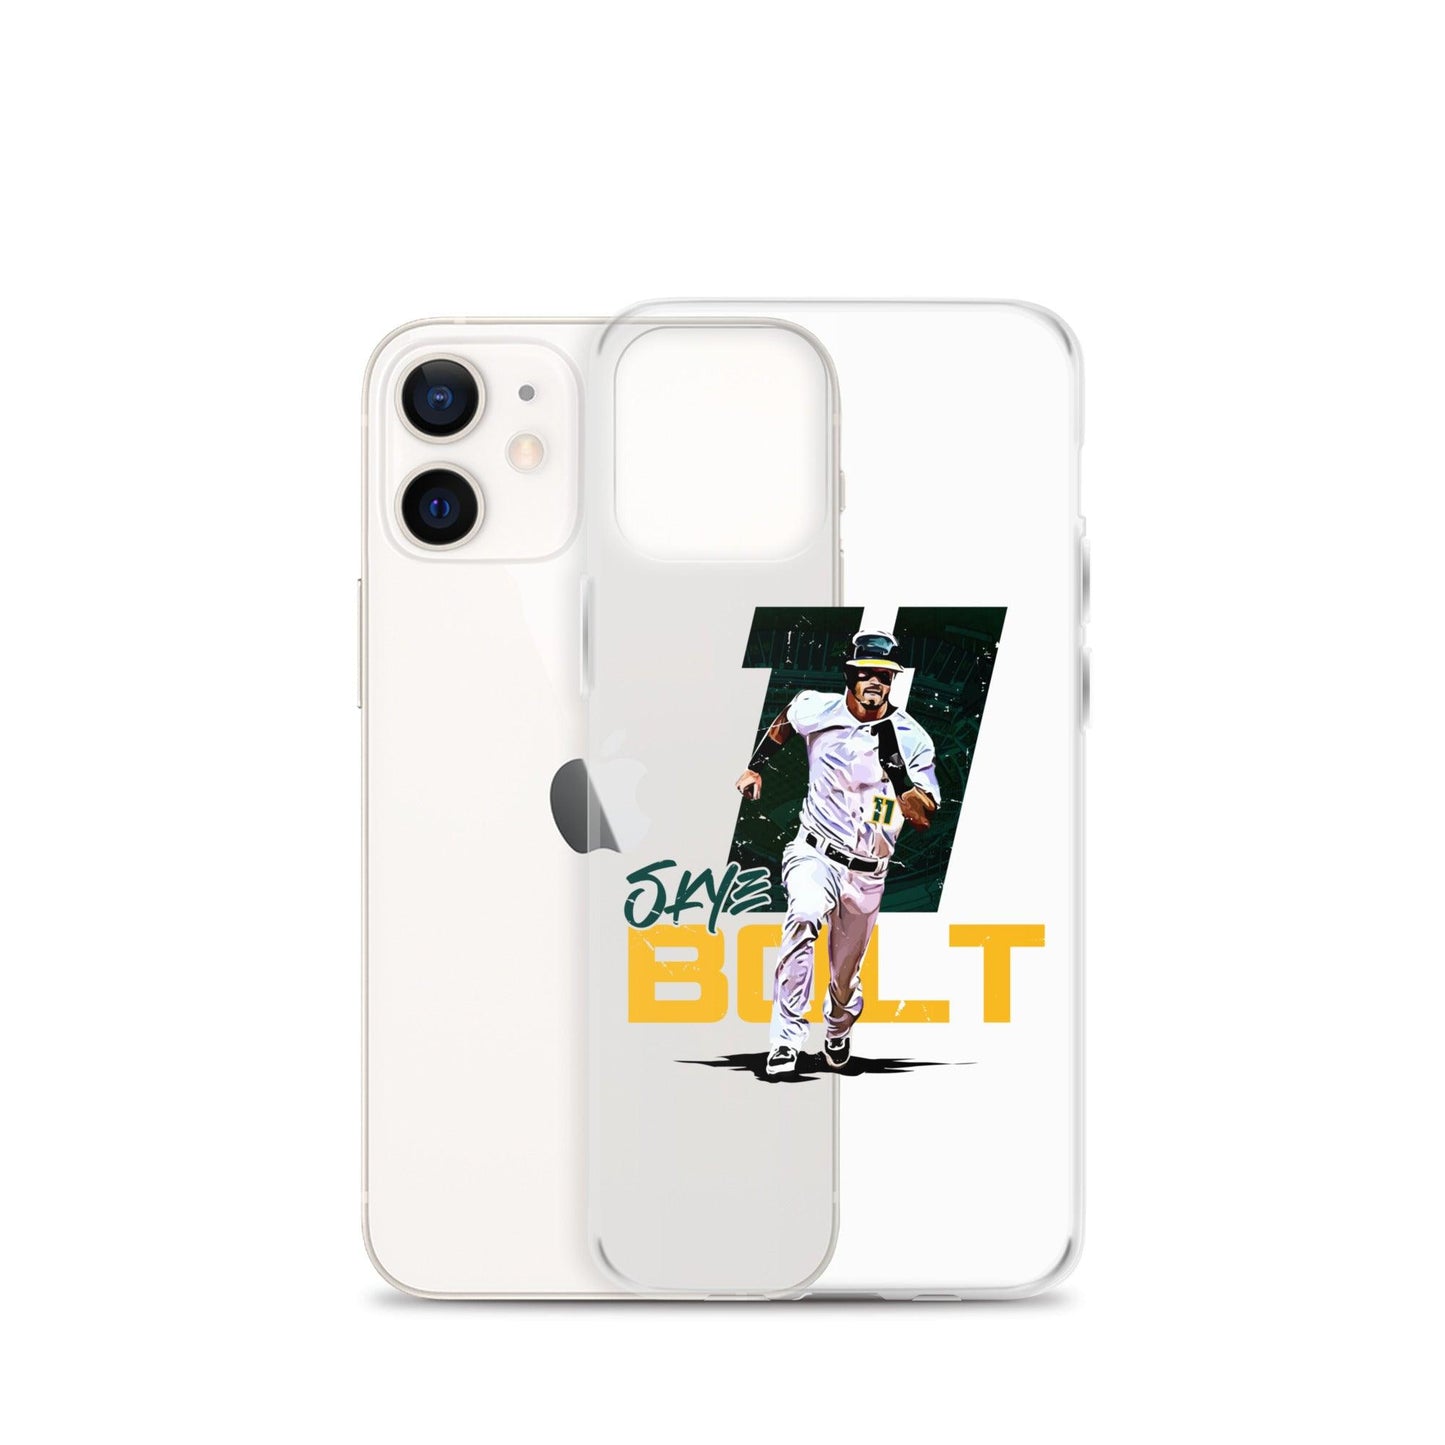 Skye Bolt “Heritage” iPhone Case - Fan Arch